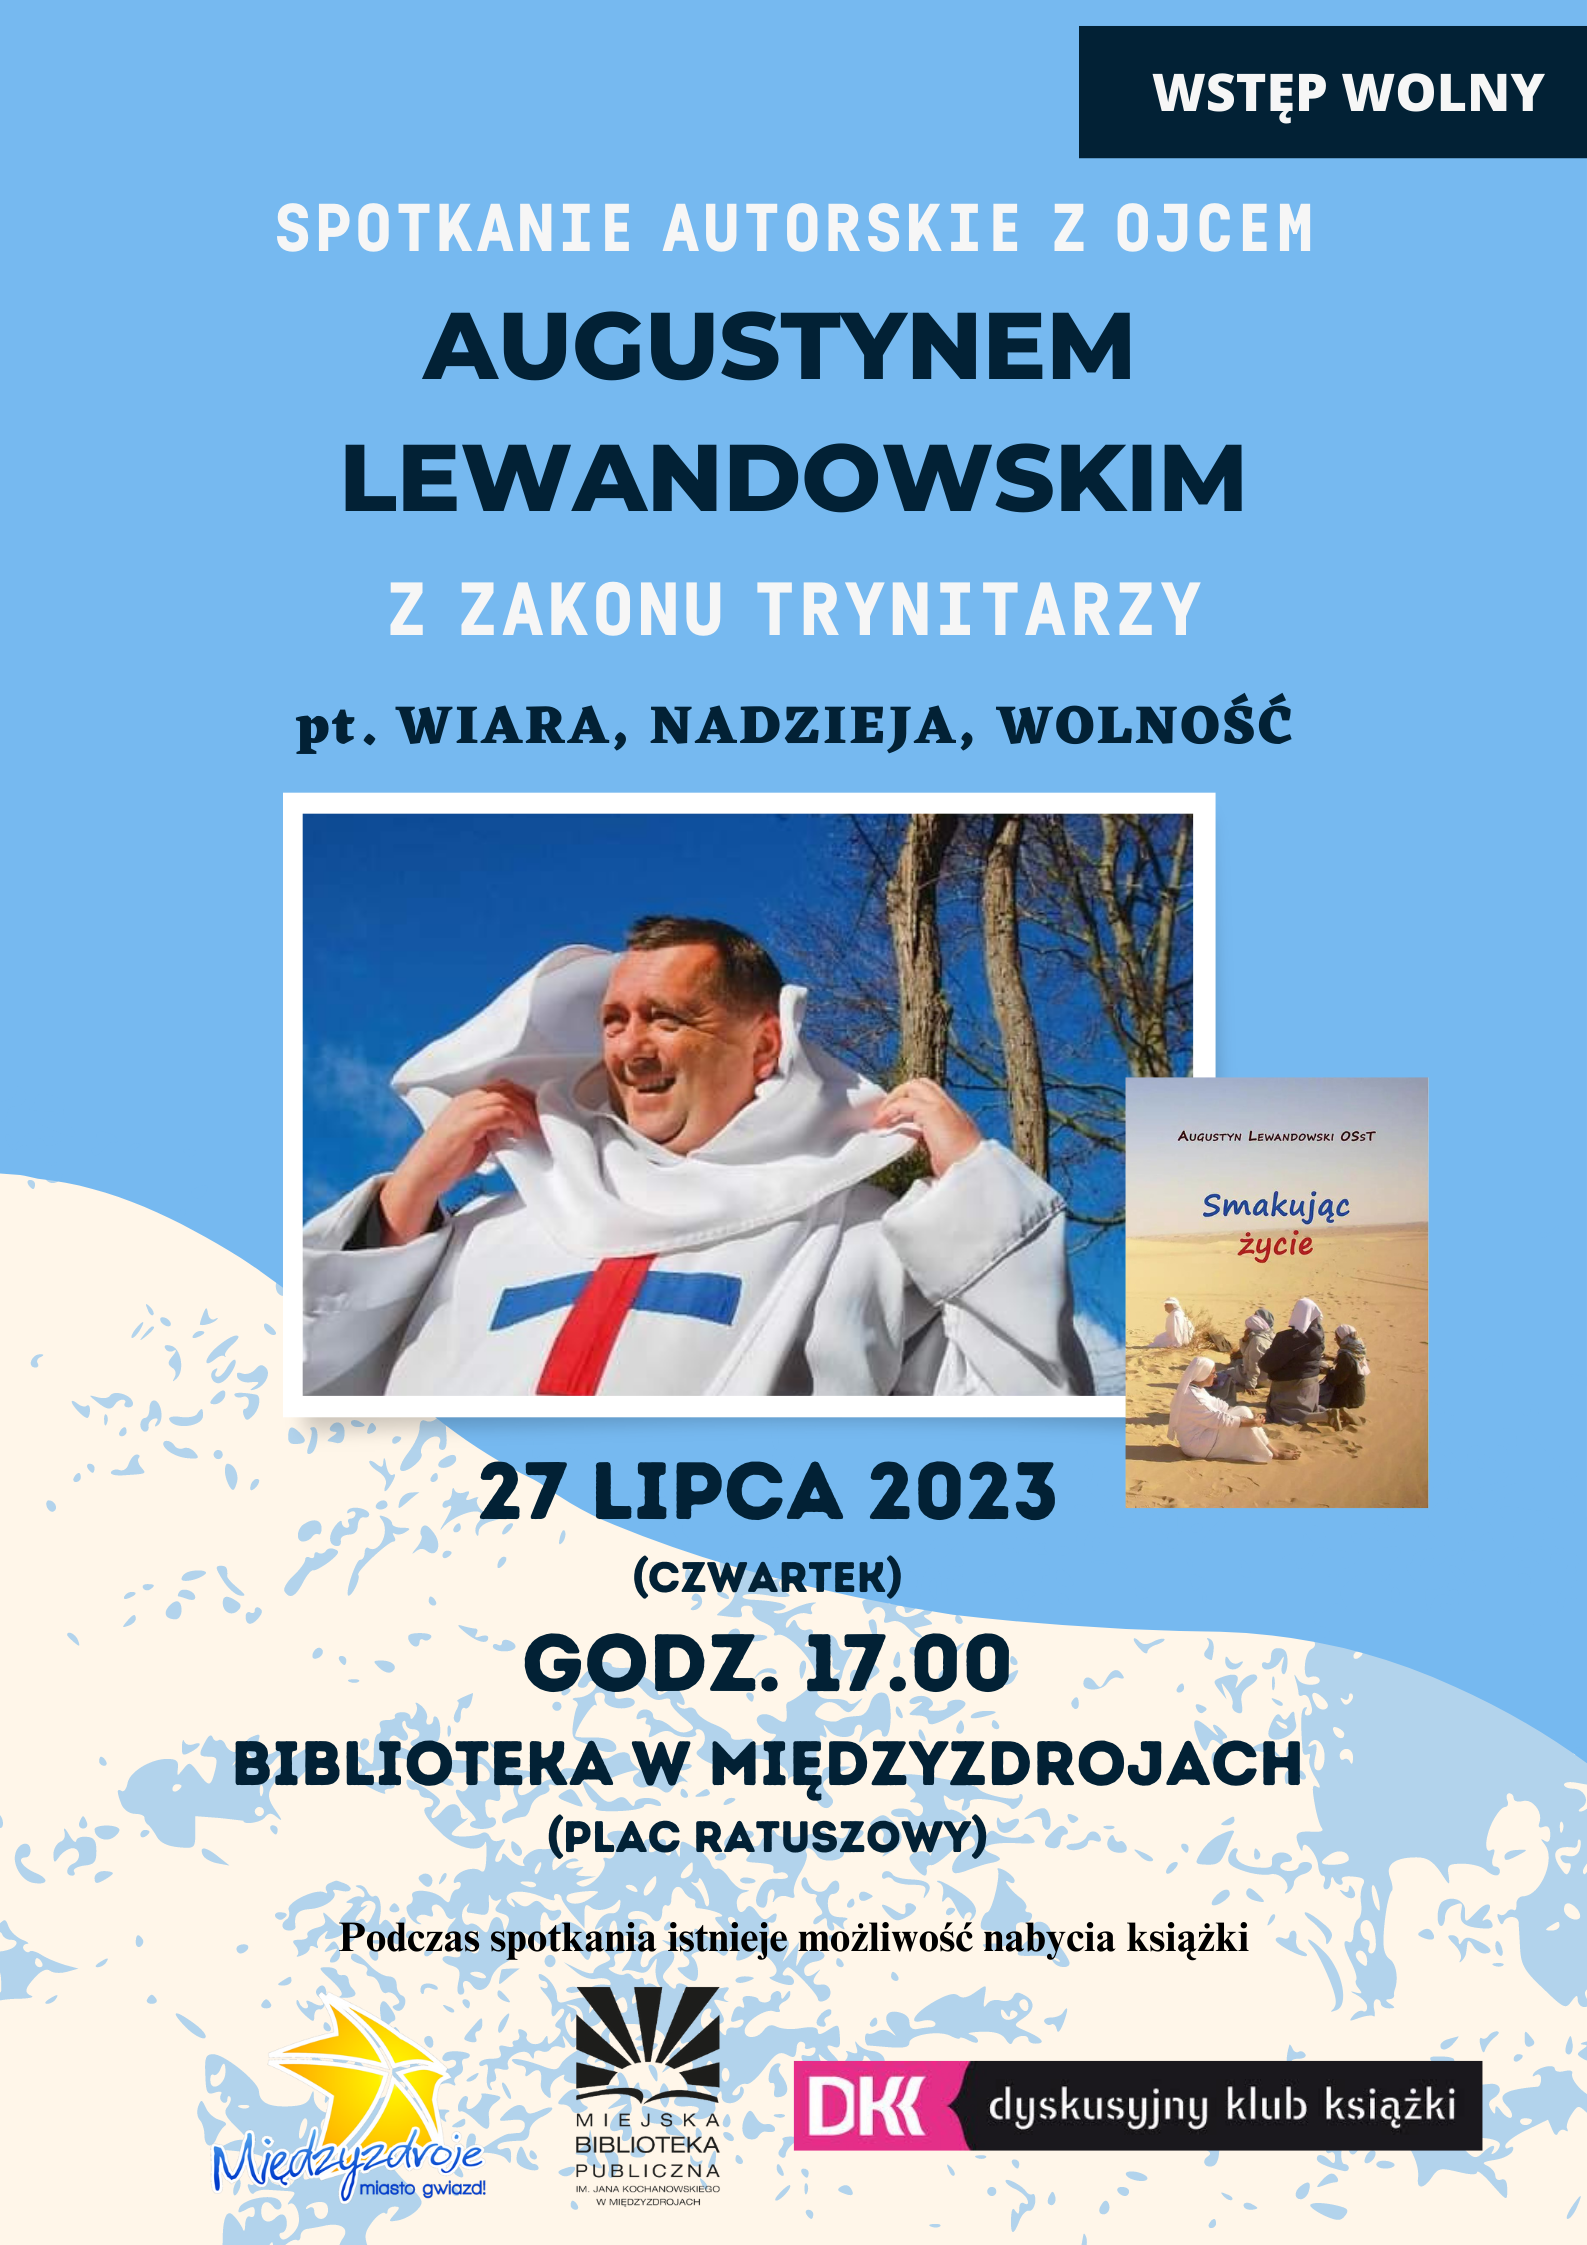 Wiara, nadzieja i wolność – spotkanie autorskie z Ojcem Augustynem Lewandowskim - 27 lipca 2023 r. 